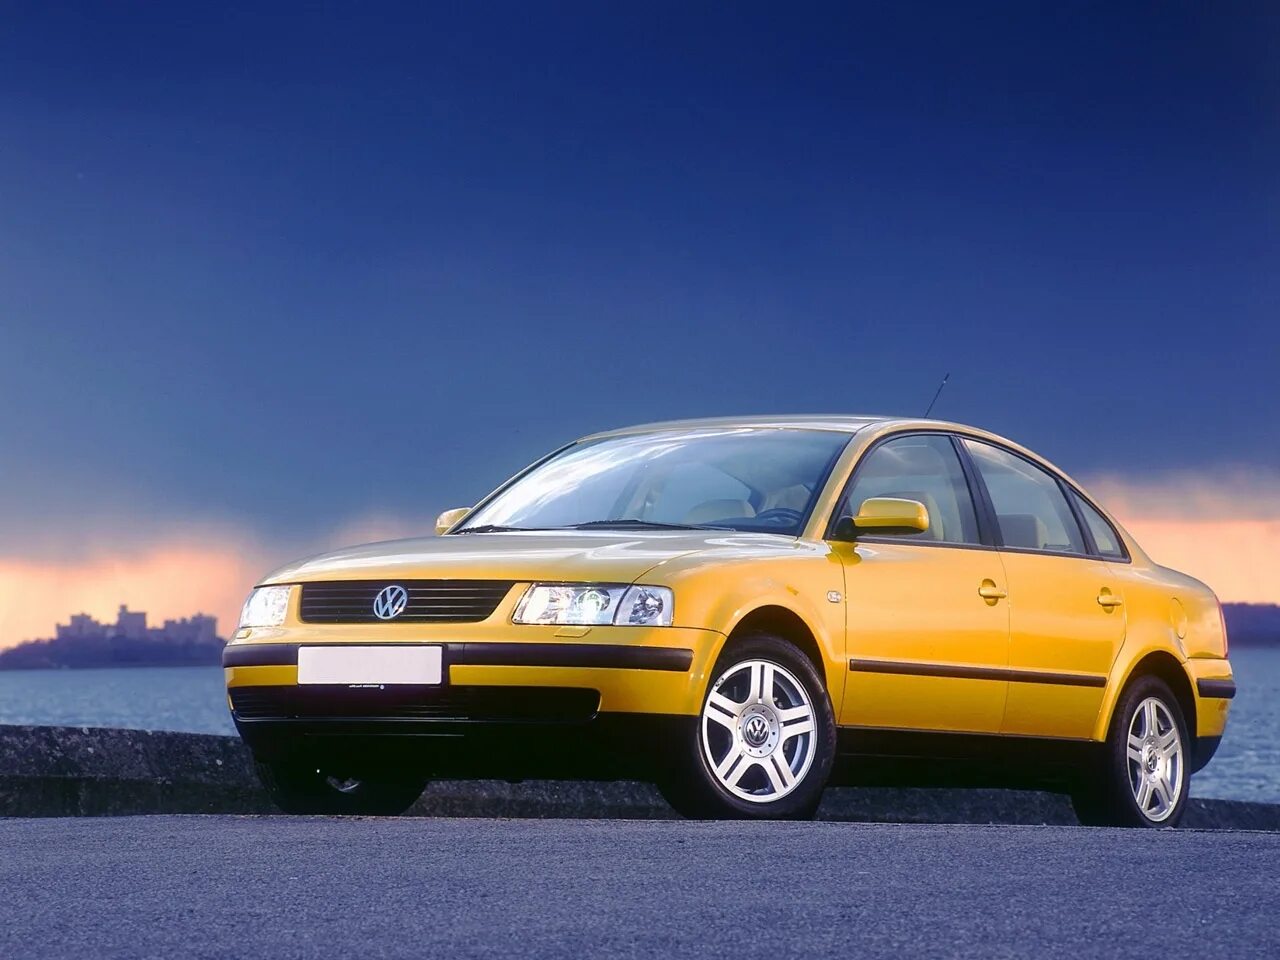 Купить фольксваген в5. Volkswagen Passat b5 седан. Фольксваген Пассат в 5 седан. VW Passat b5 2000. Фольксваген Пассат б5 желтый.